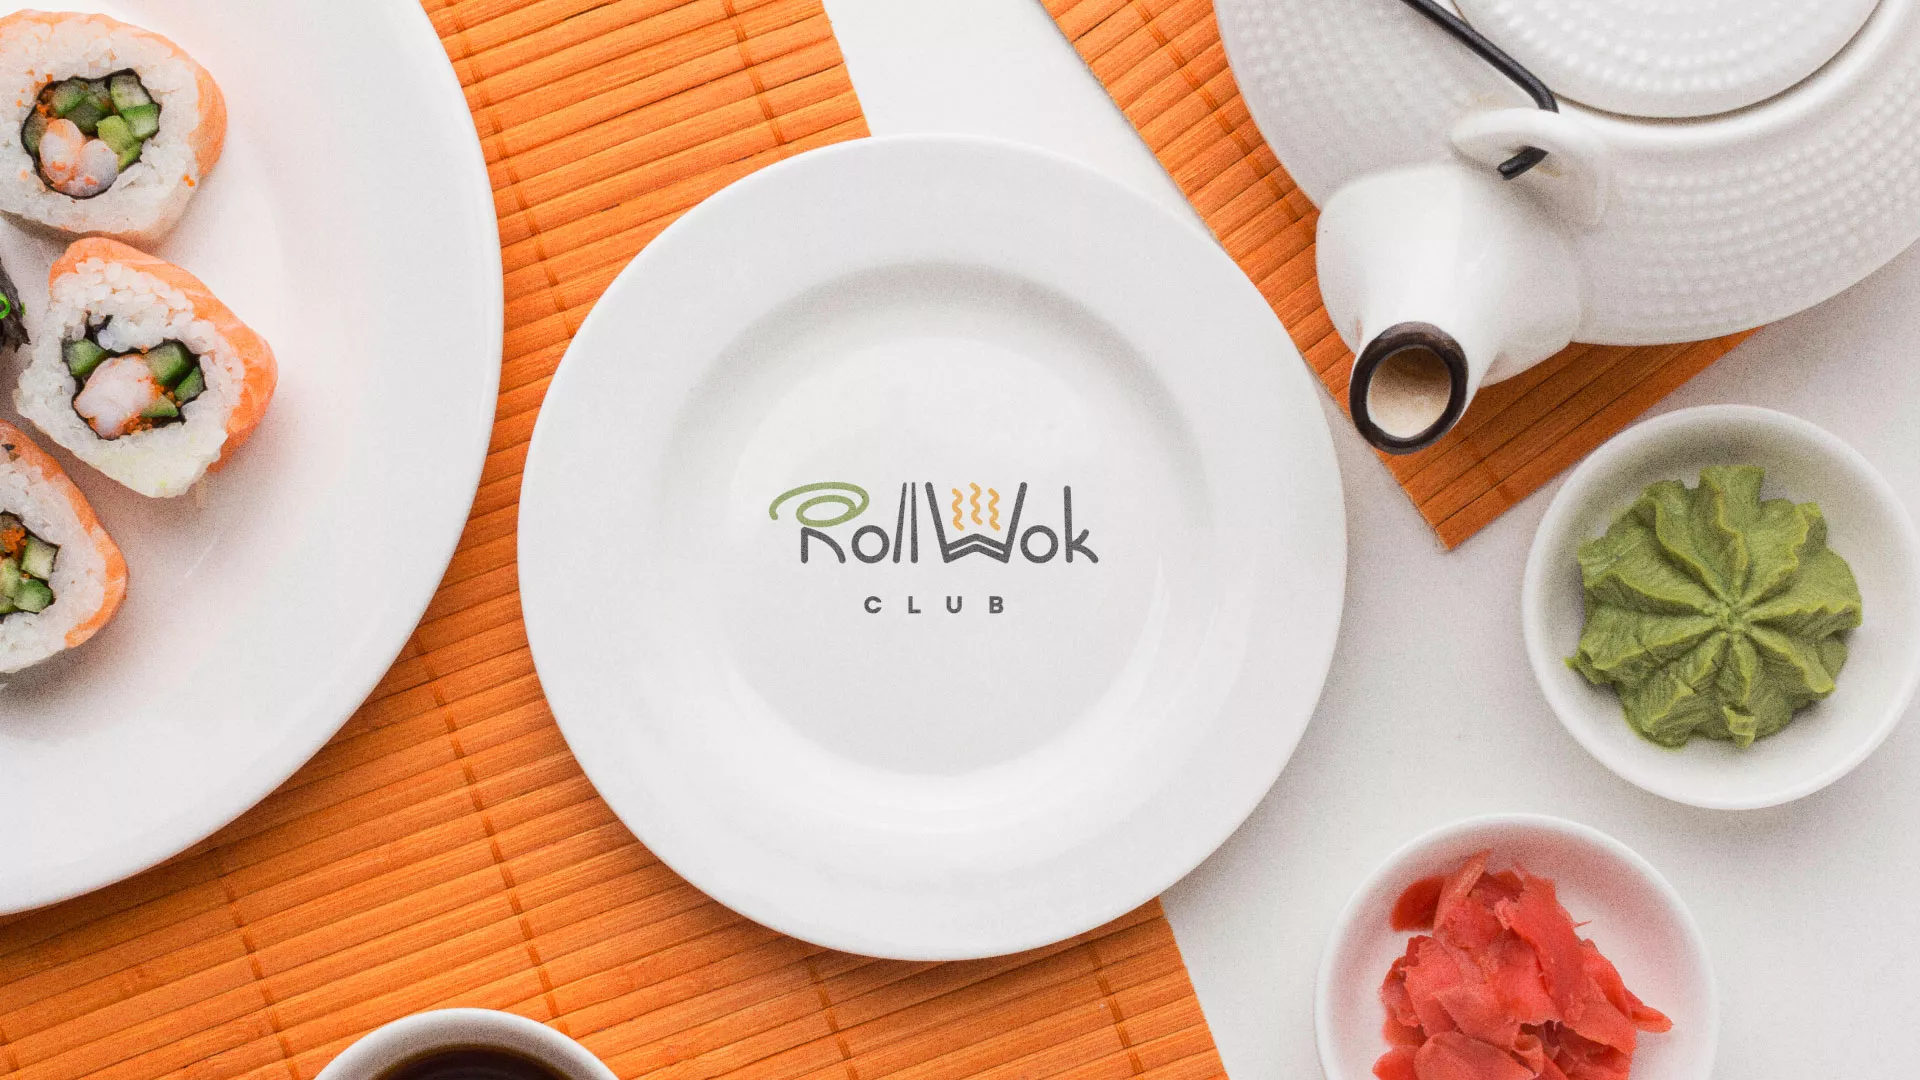 Разработка логотипа и фирменного стиля суши-бара «Roll Wok Club» в Константиновске